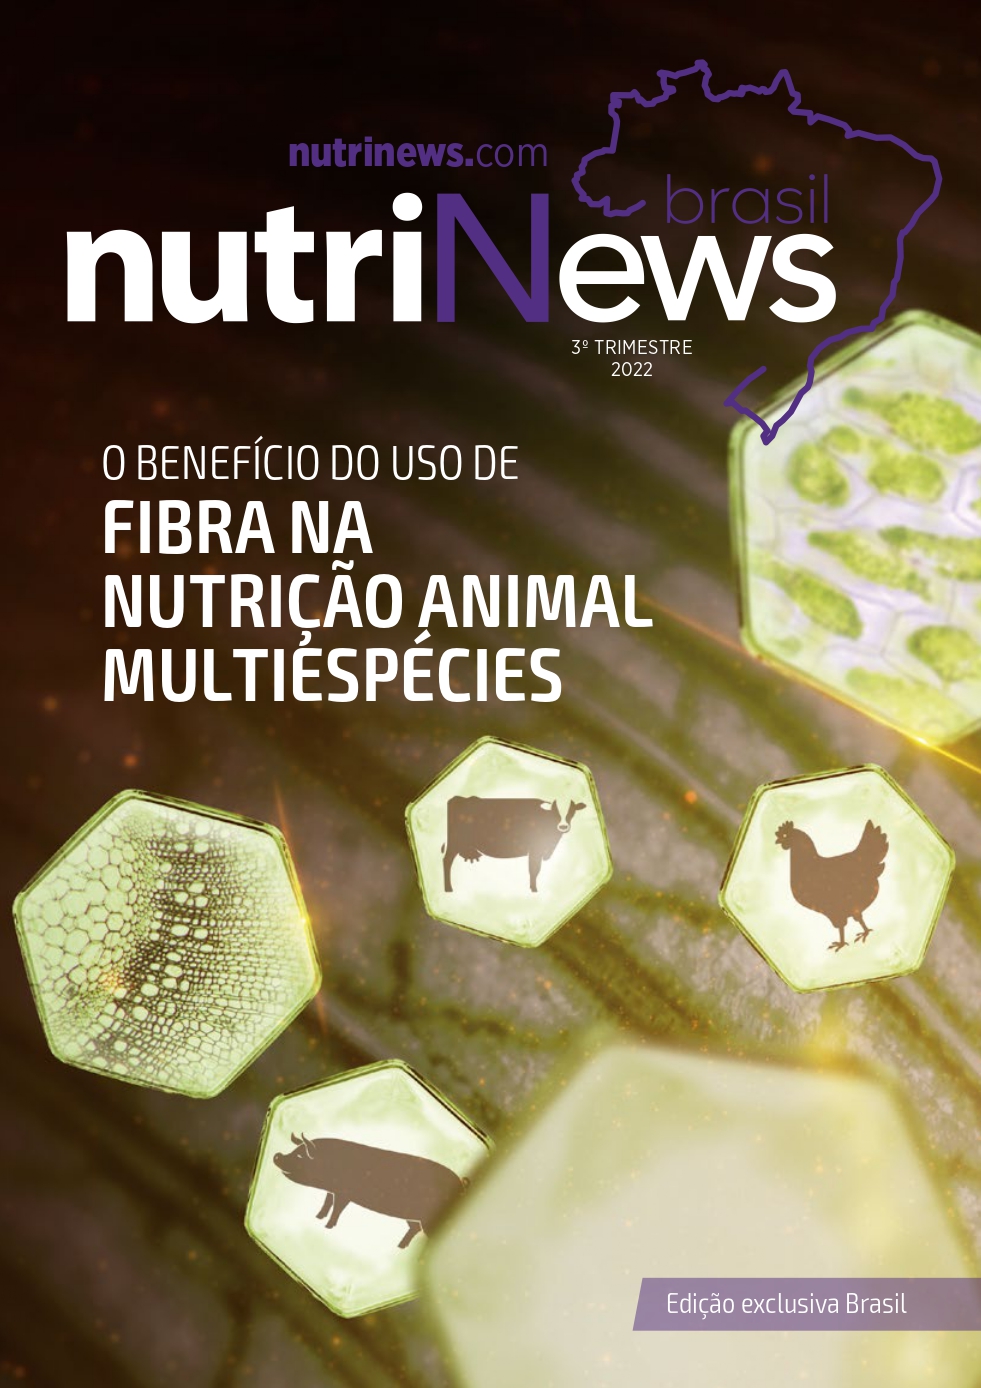 Revista nutriNews Brasil 3 TRI 2022 